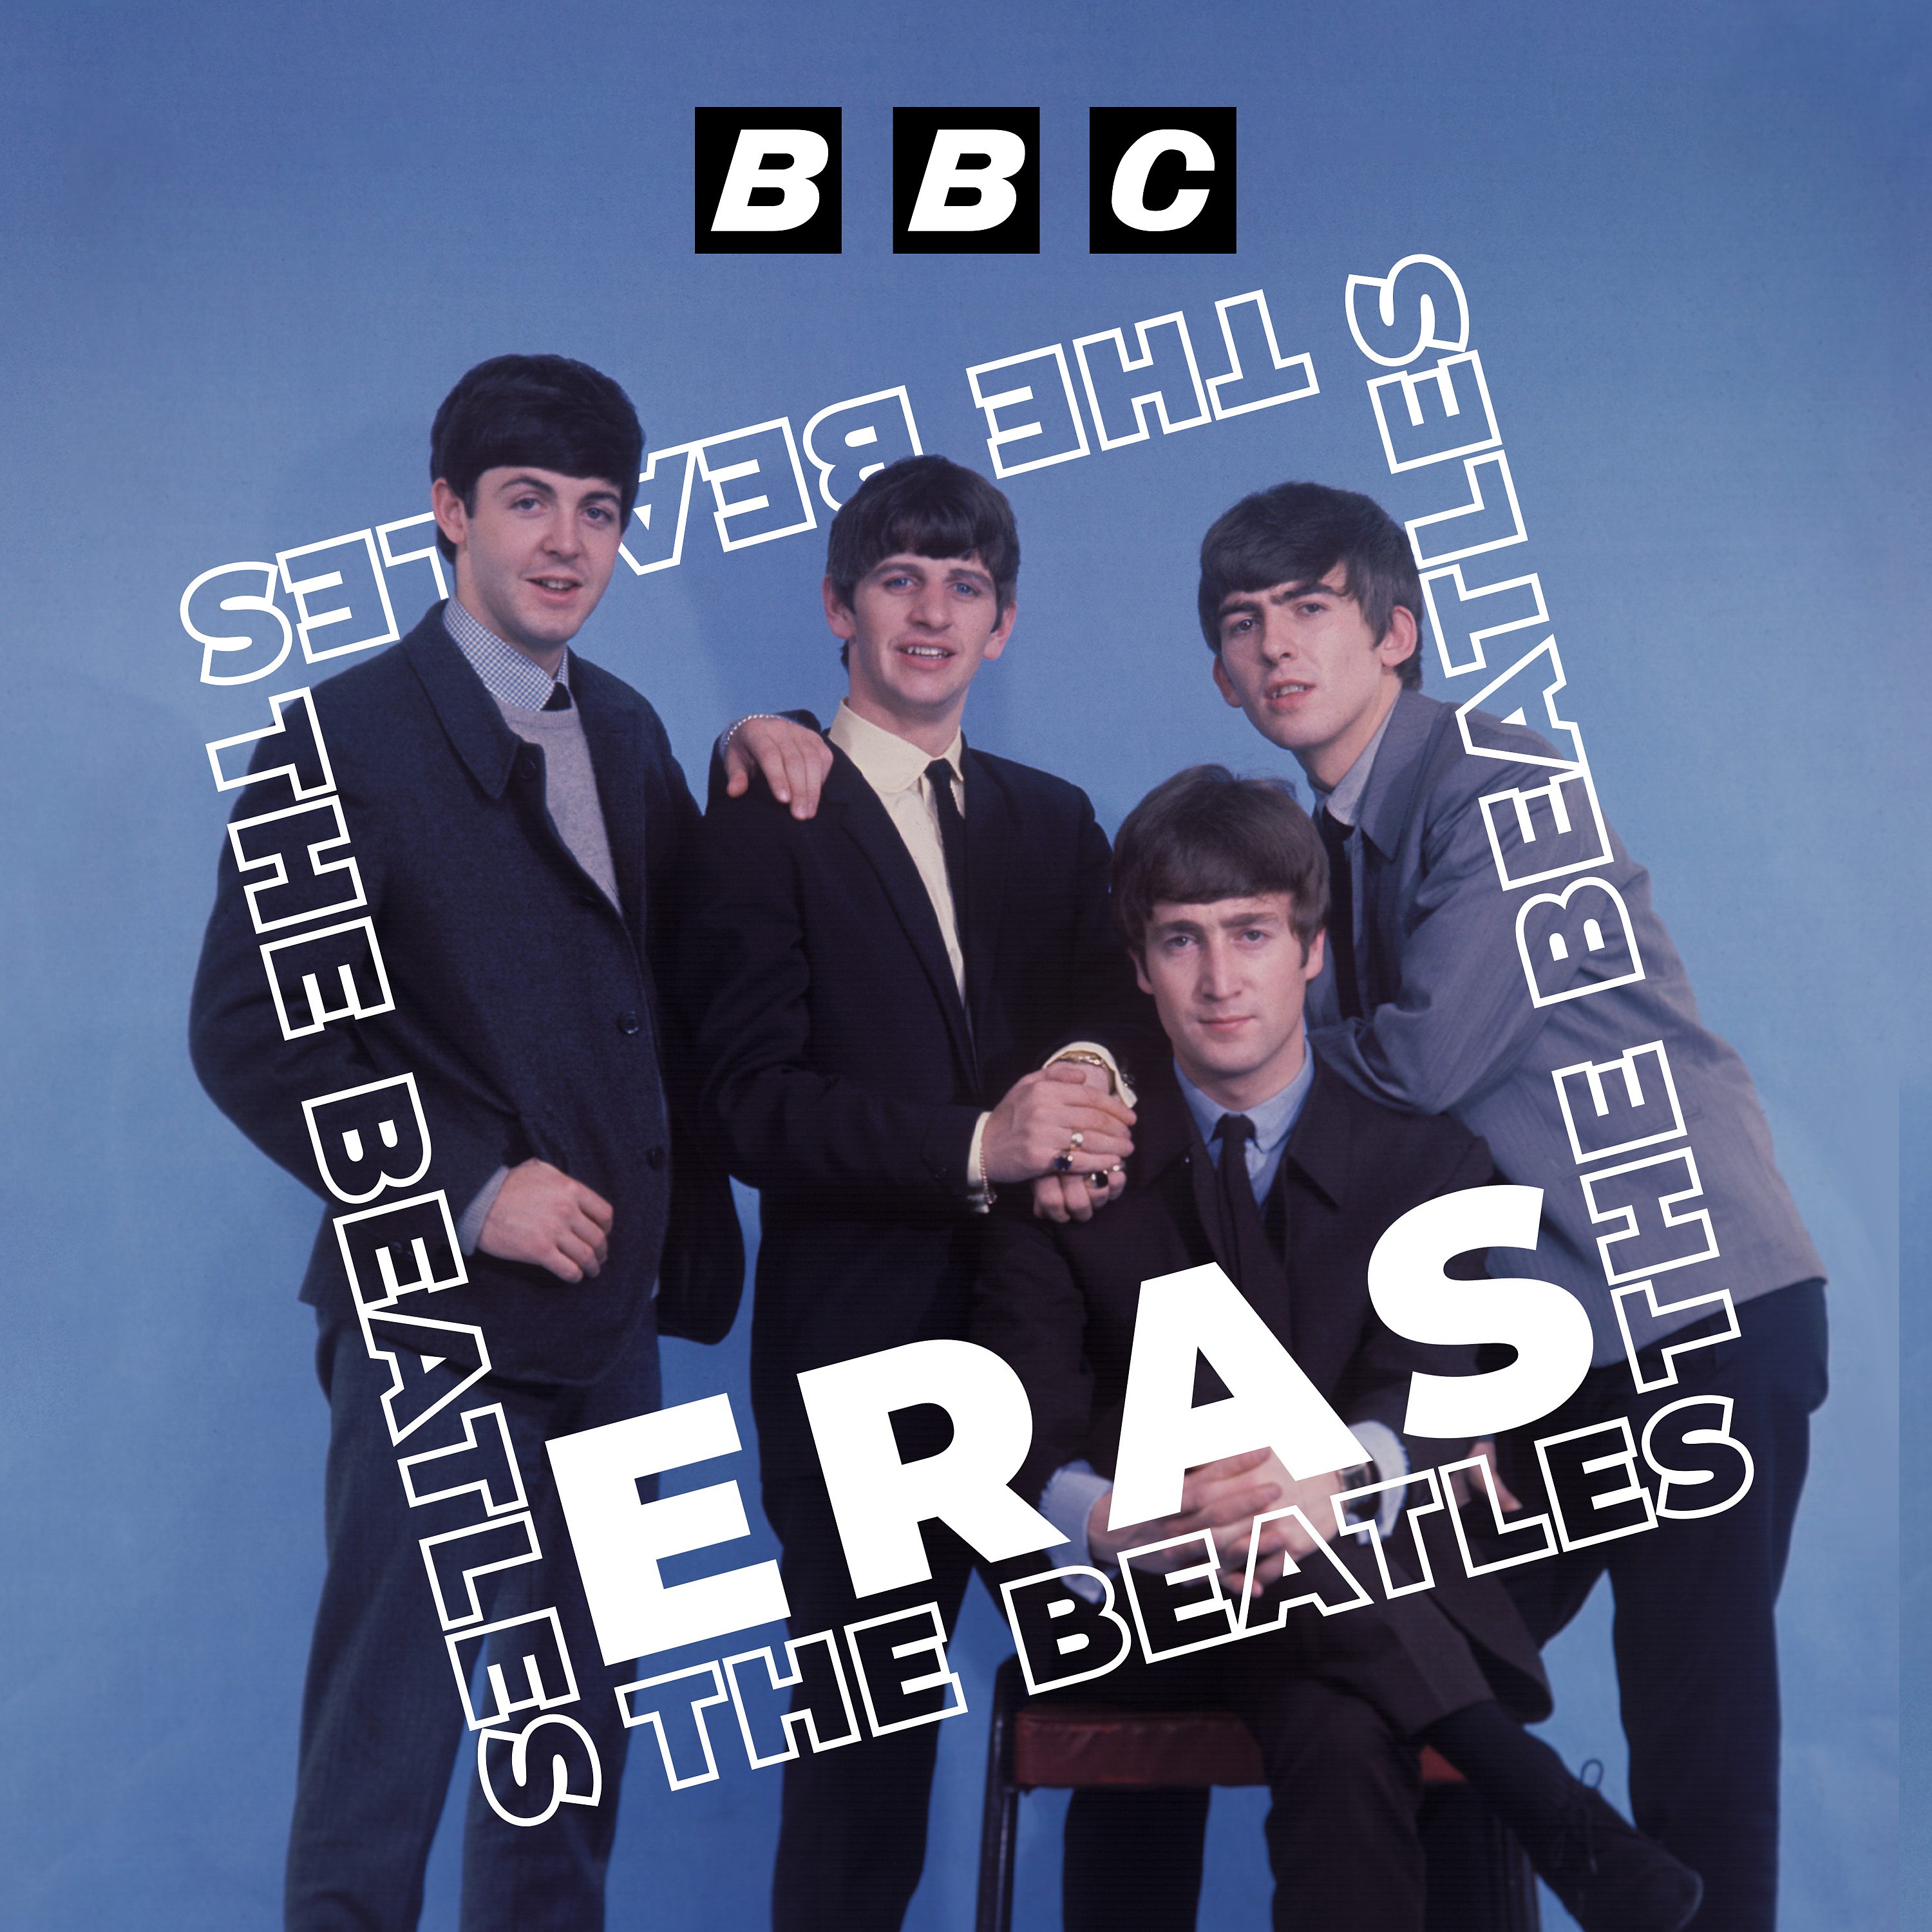 The Beatles: 1. Rock n’ Roll